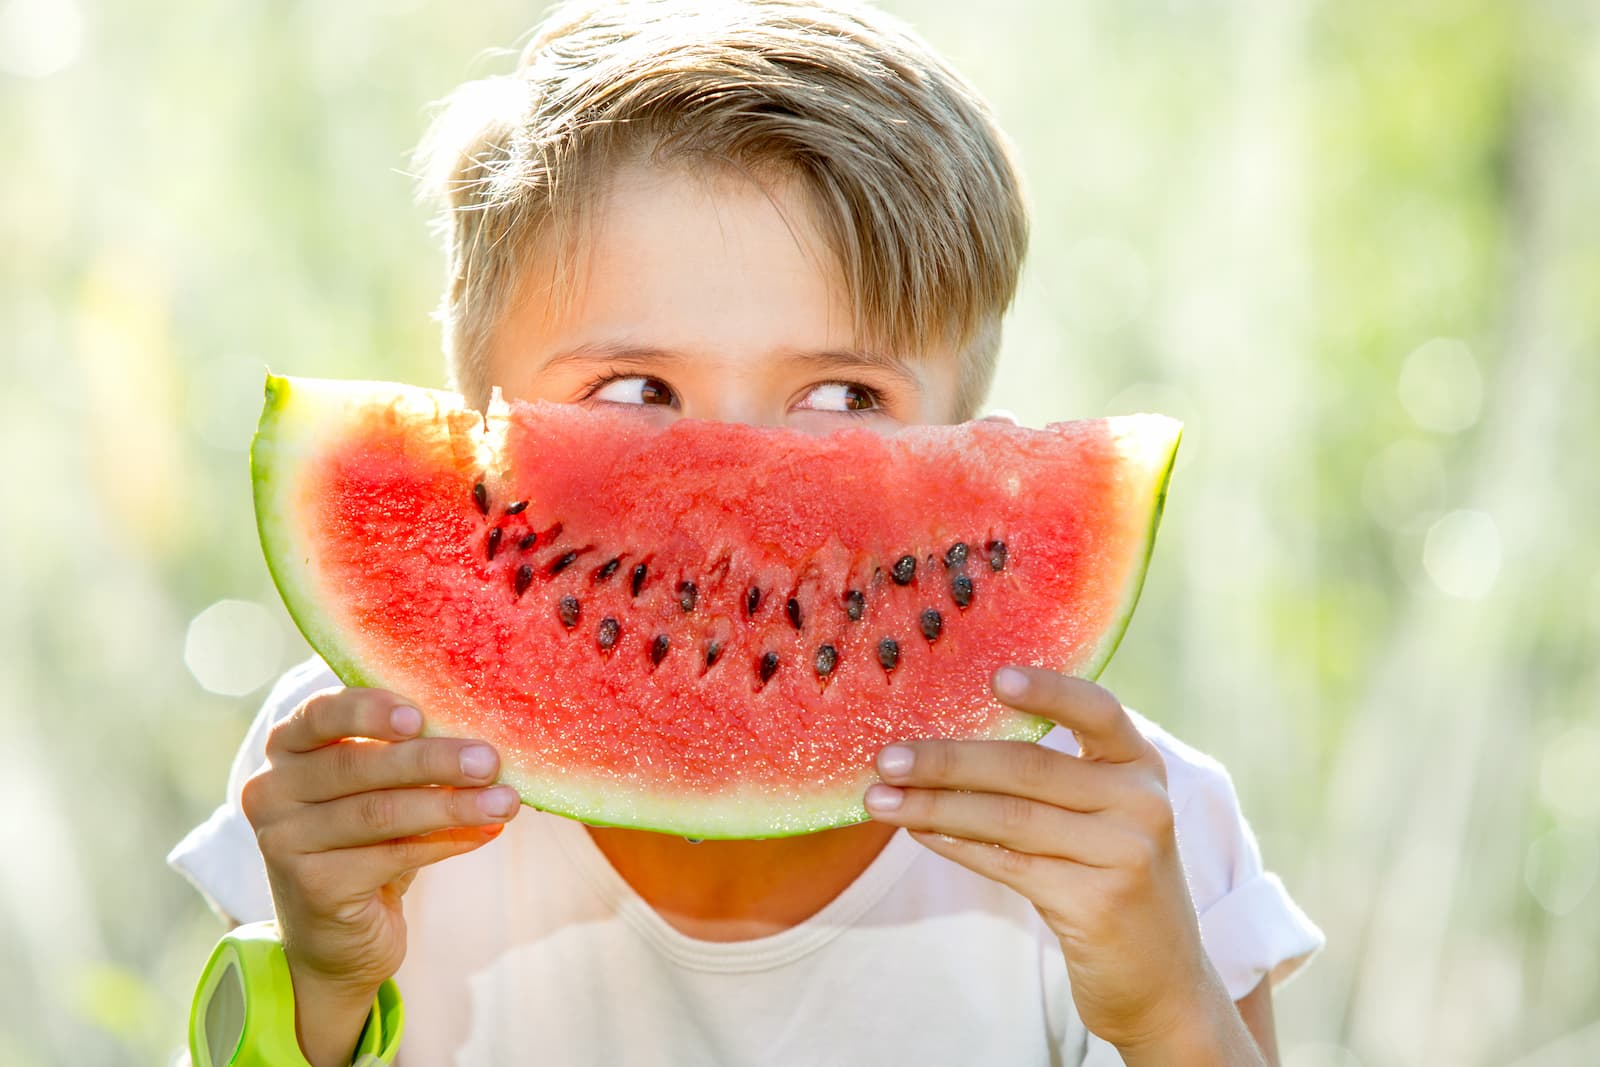 Fomentar el consumo de frutas y verduras en niños es clave para garantizar su salud